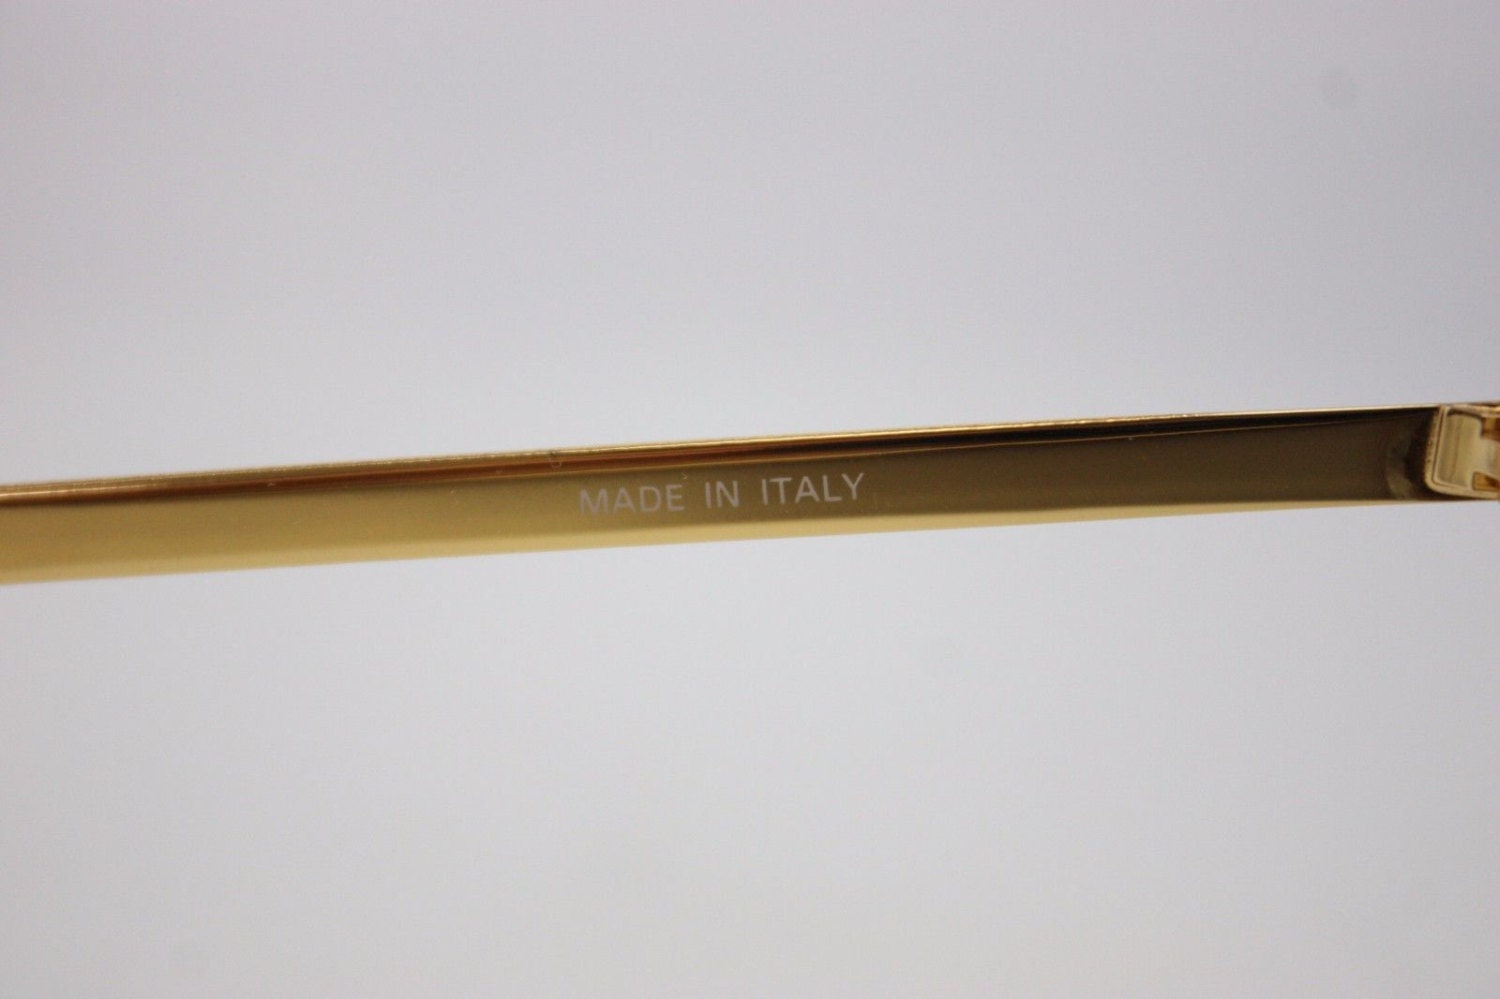 Italian Graffiti by Maga Vintage Sunglasses Made in Italy | Etsy